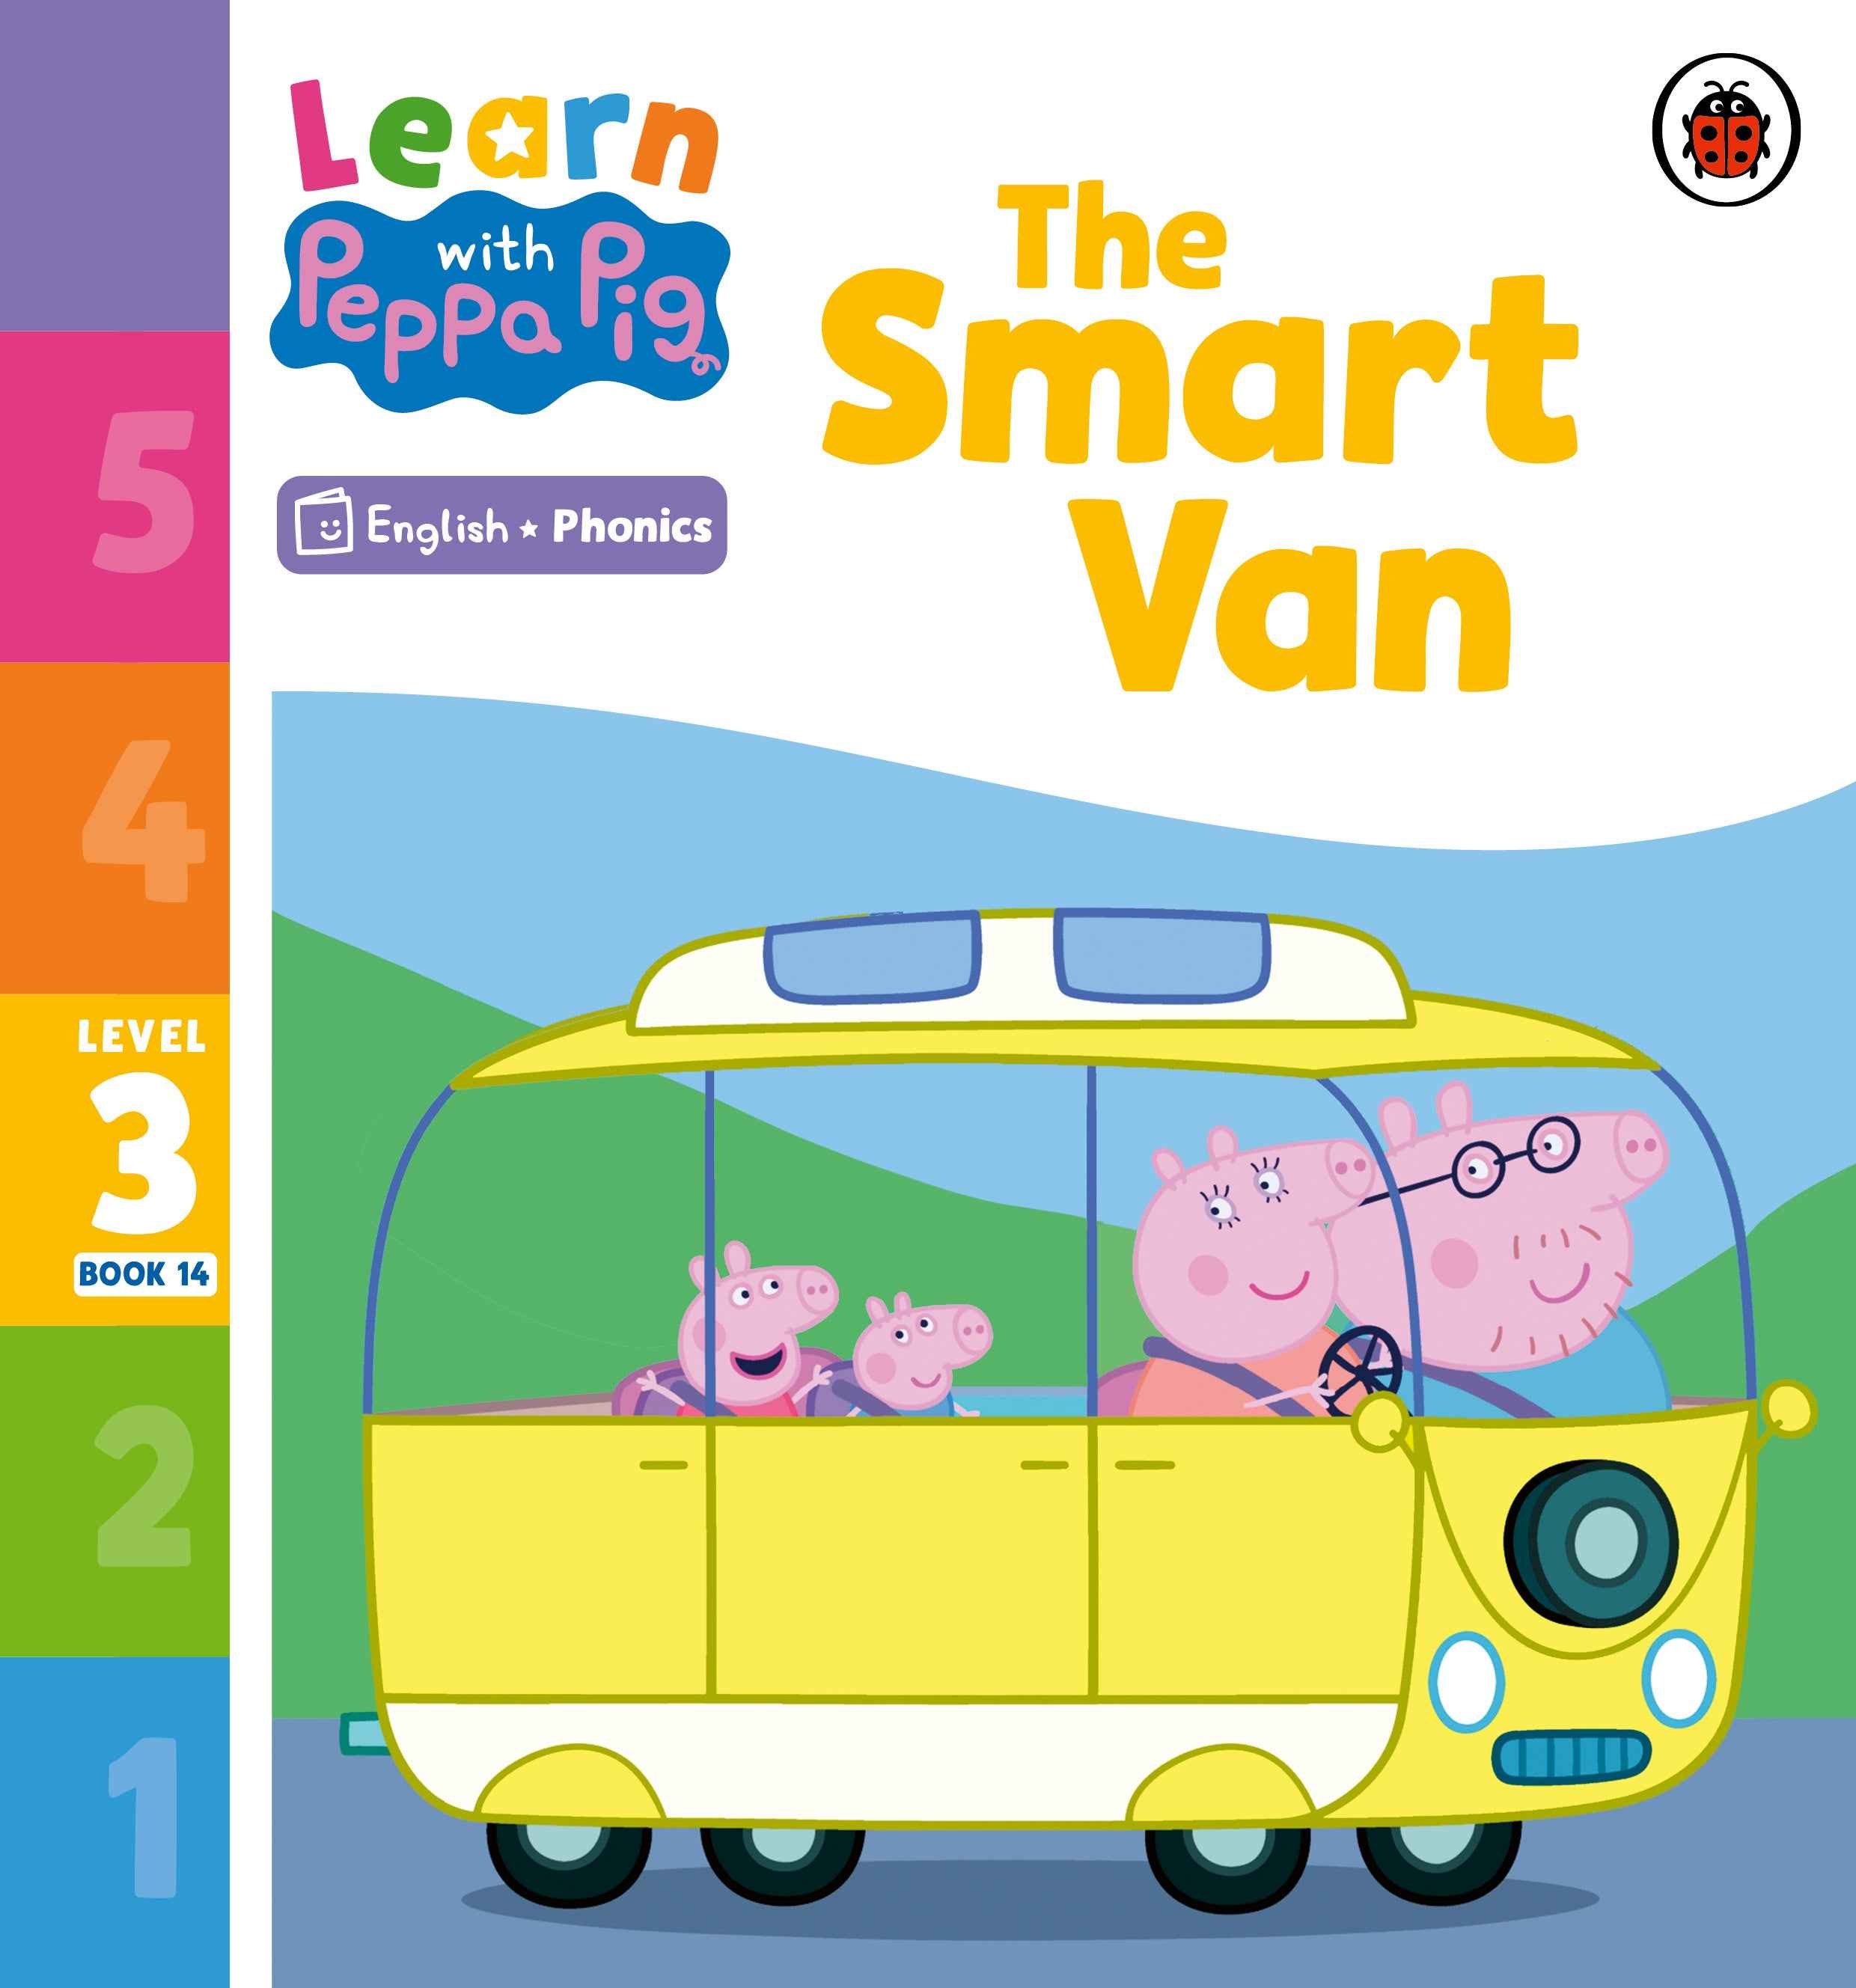 The Smart Van